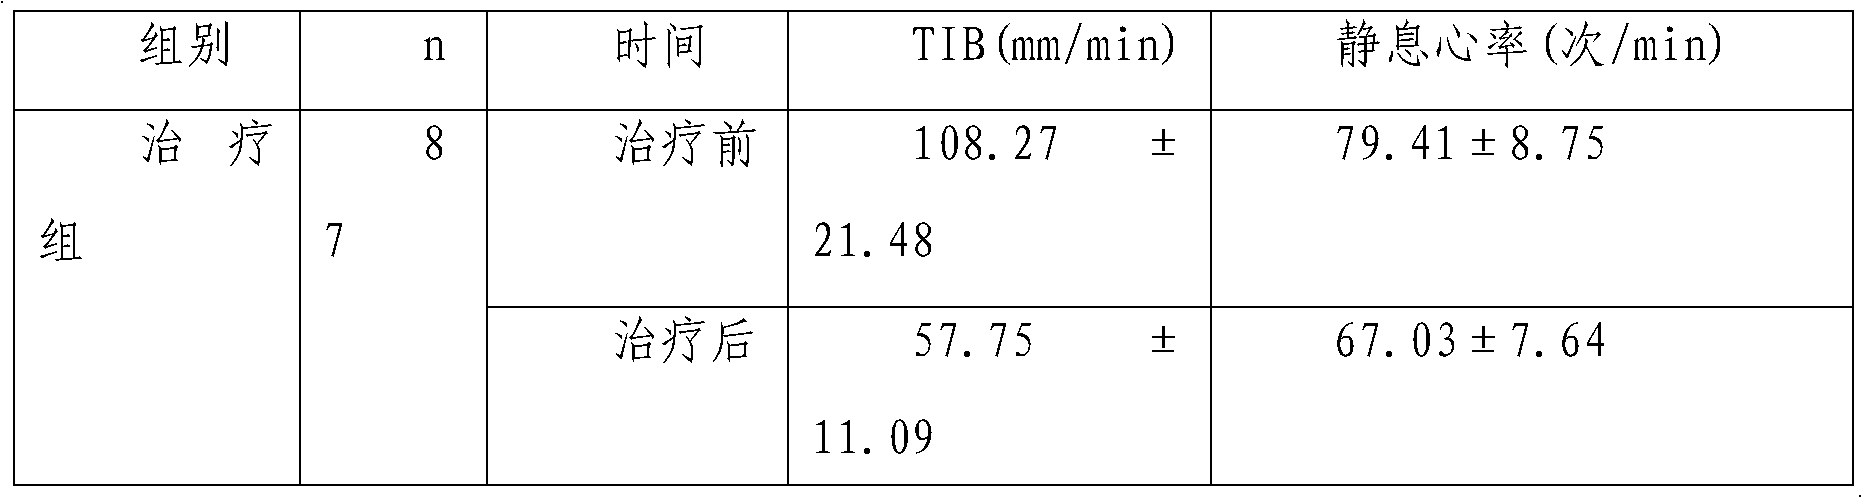 Dual-cordis effect of Xin Keshu